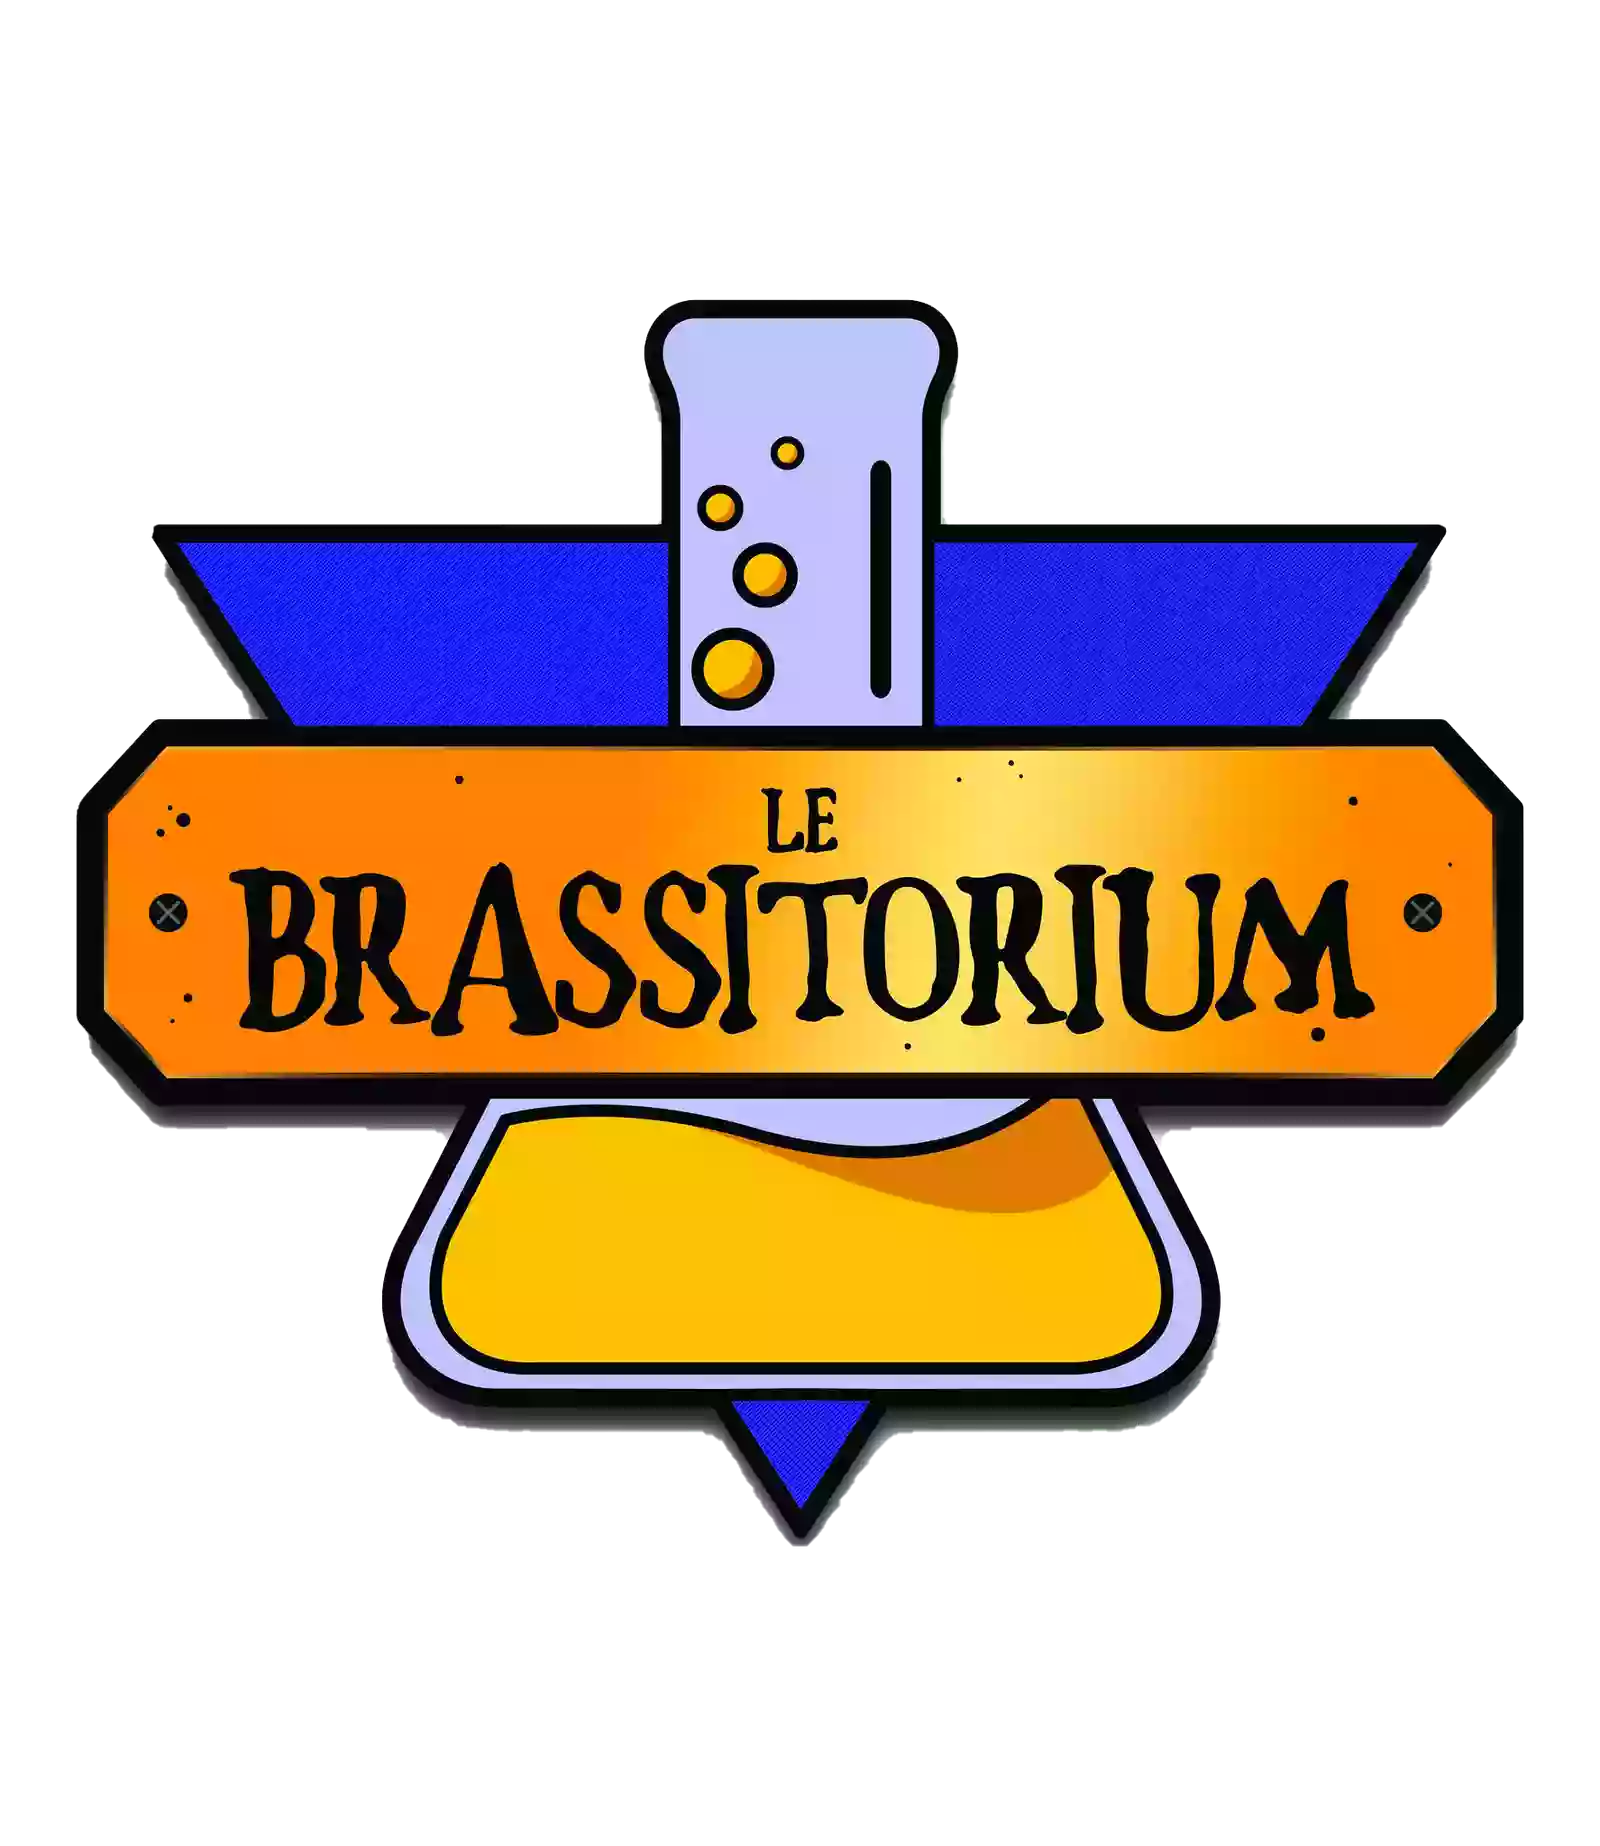 Le Brassitorium